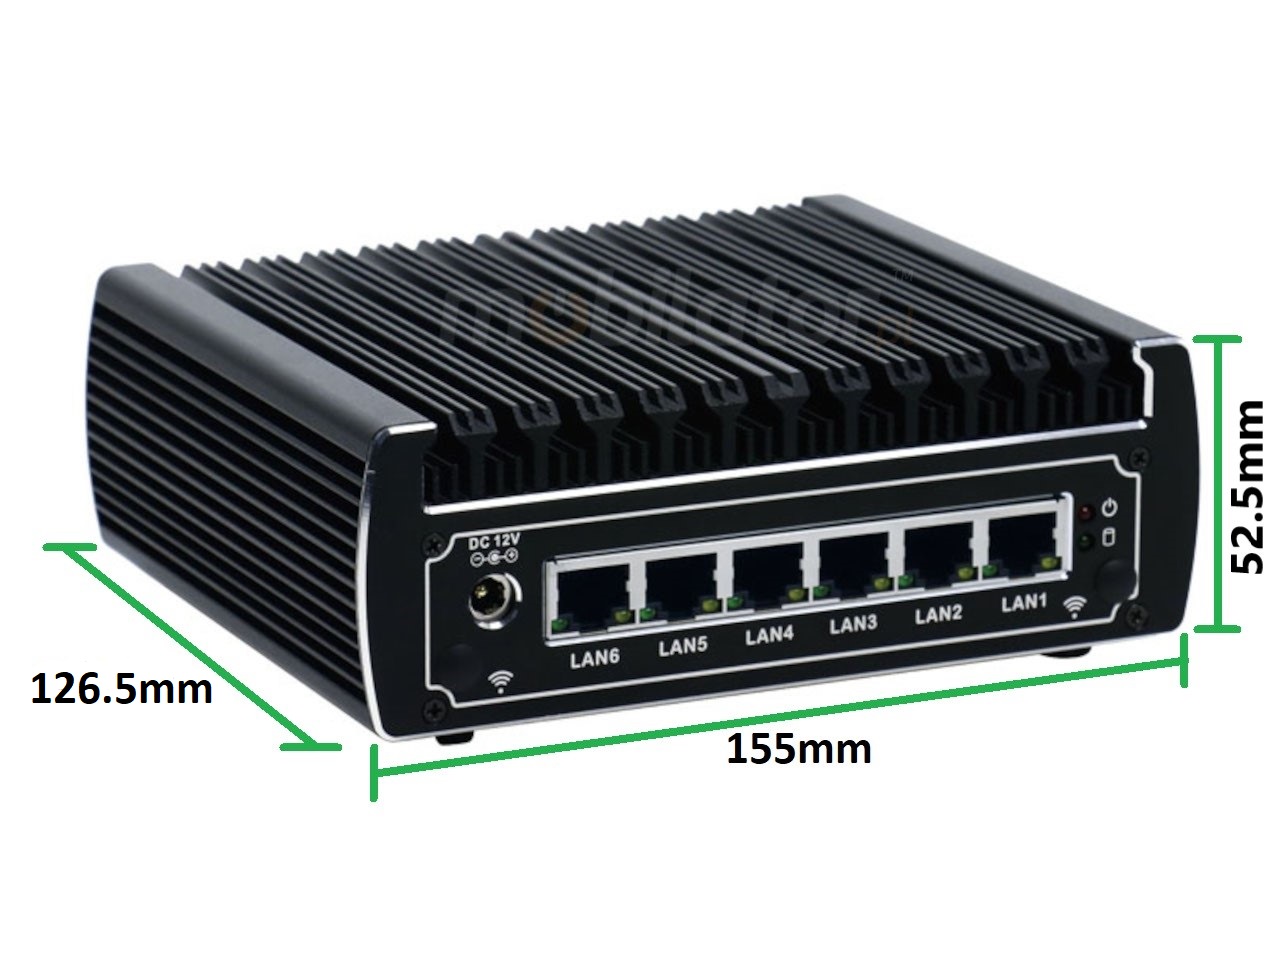   IBOX N133 v.8, wymiary, HDD, DDR4, przemysłowy, mały, szybki, niezawodny, fanless, industrial, small, LAN, INTEL i3